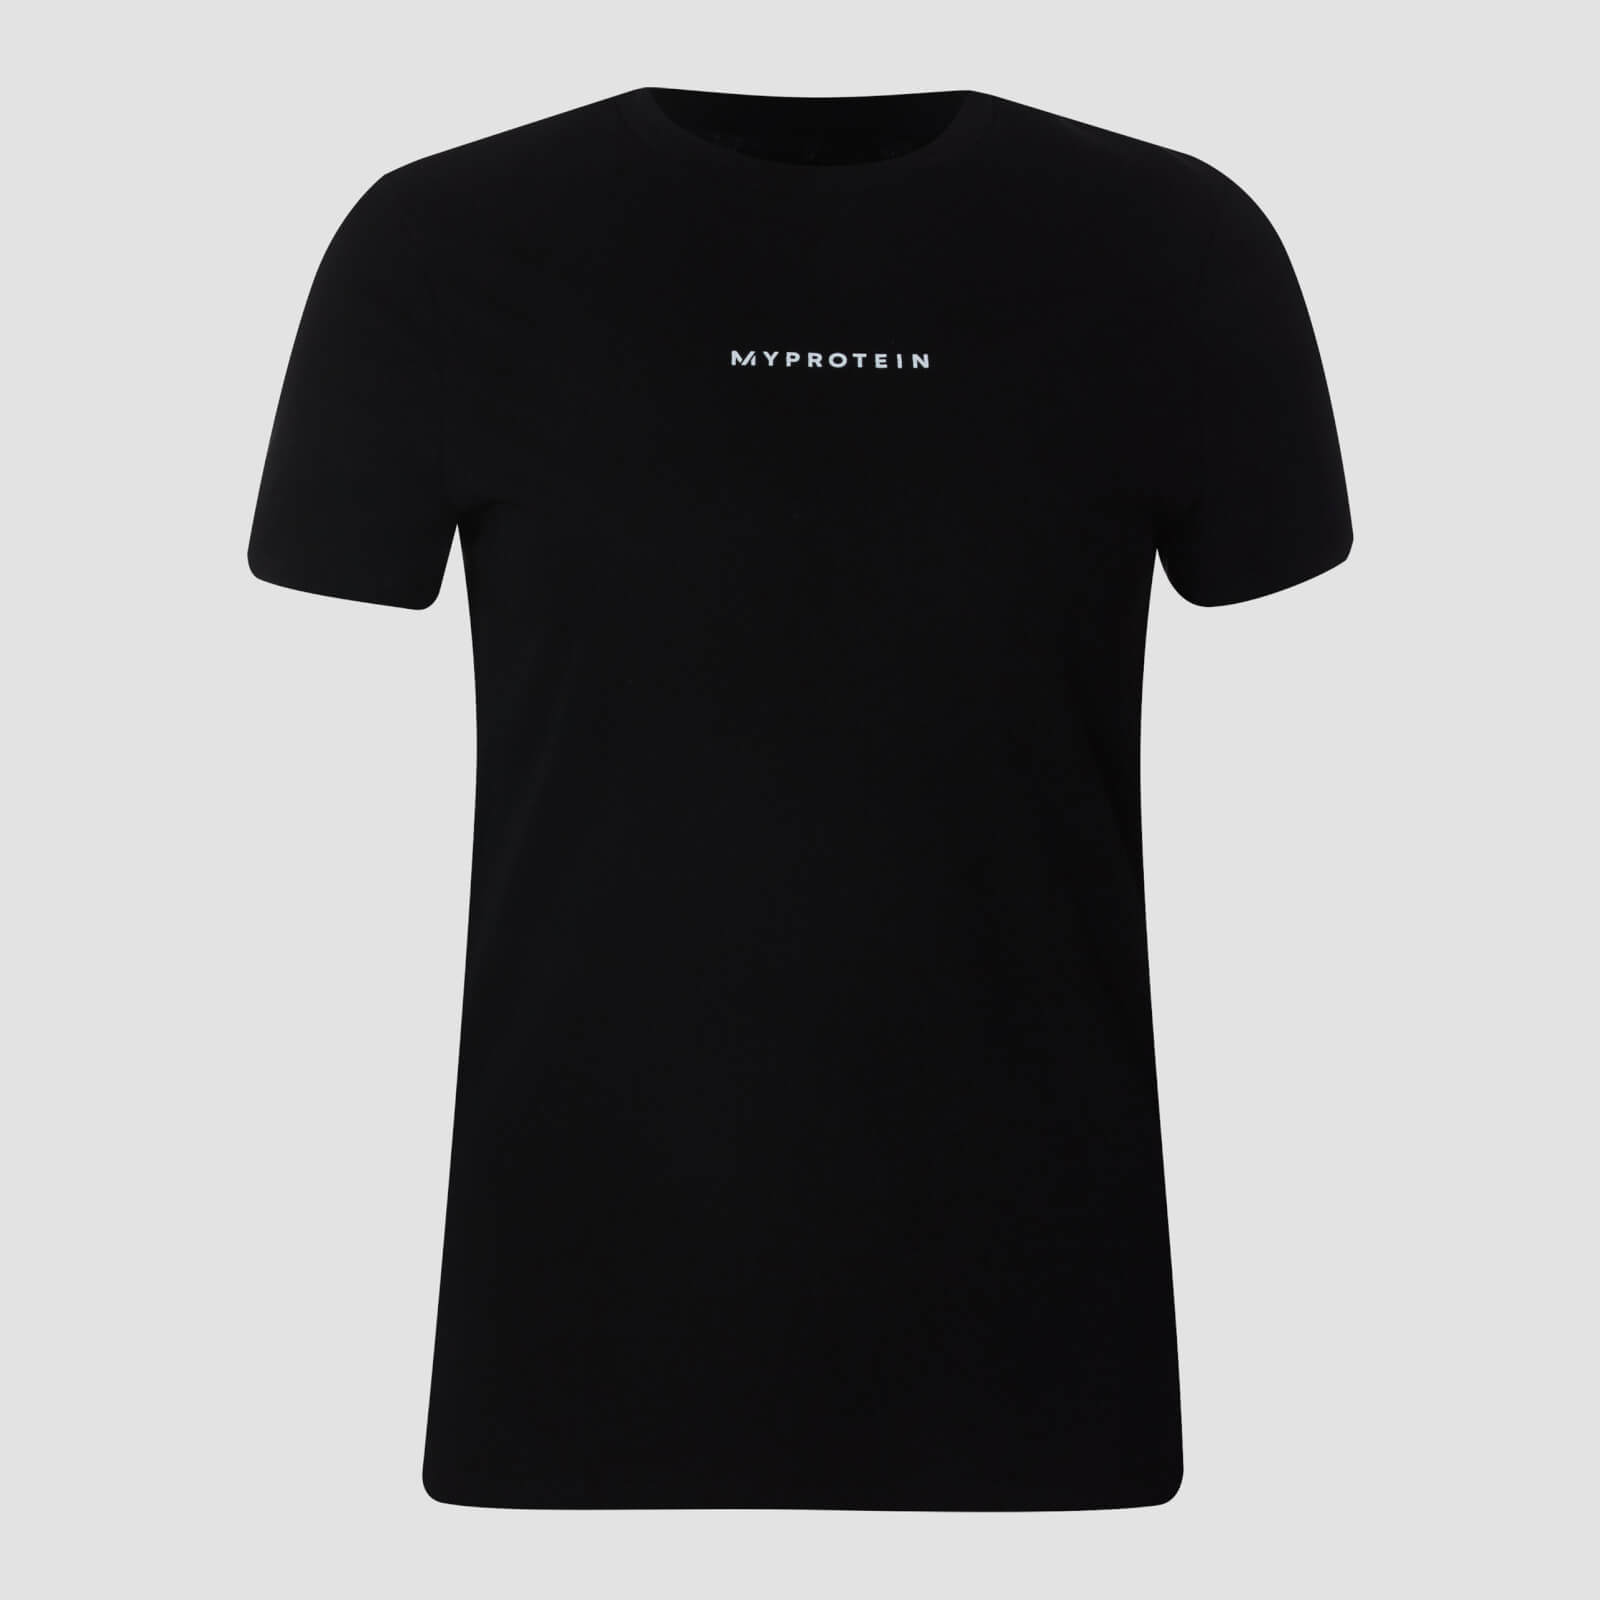 Myprotein T-shirt New Originals Contemporary da donna - Nero - XL